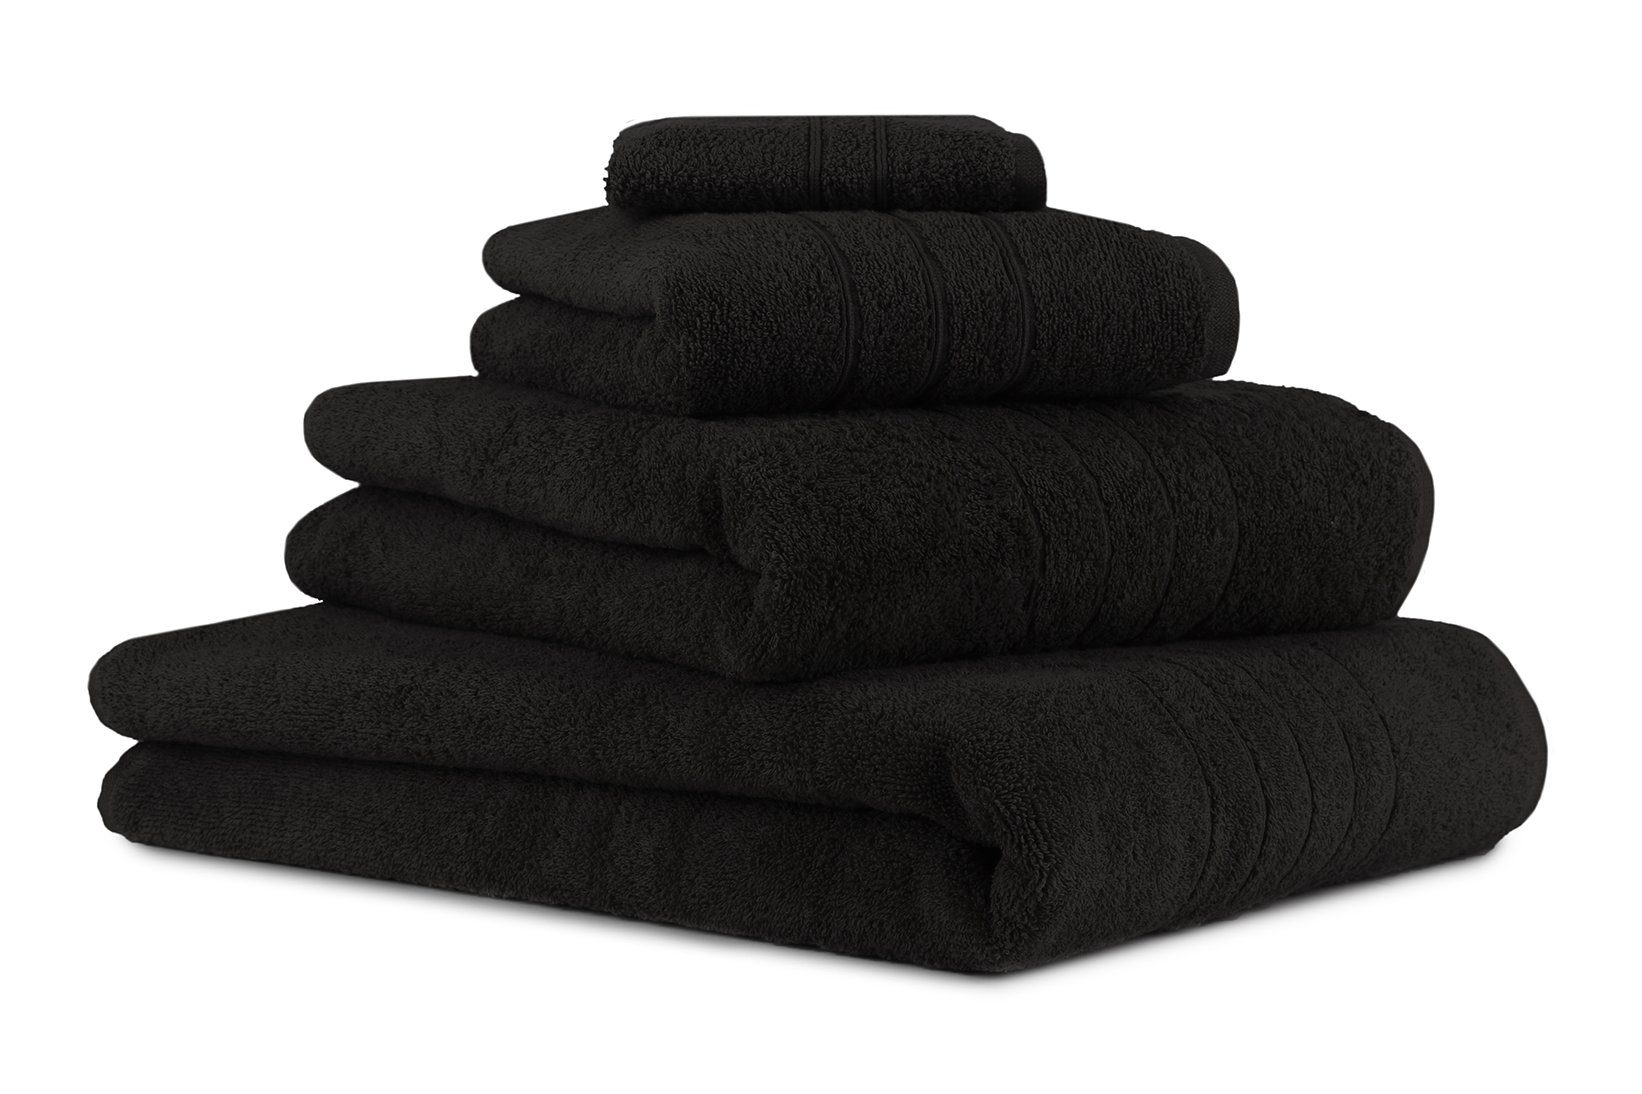 Betz Handtuch Set 4-TLG. Handtuch-Set Deluxe 100% Baumwolle 1 Badetuch 1 Duschtuch 1 Handtuch 1 Seiftuch Farbe schwarz, 100% Baumwolle, (4-tlg)